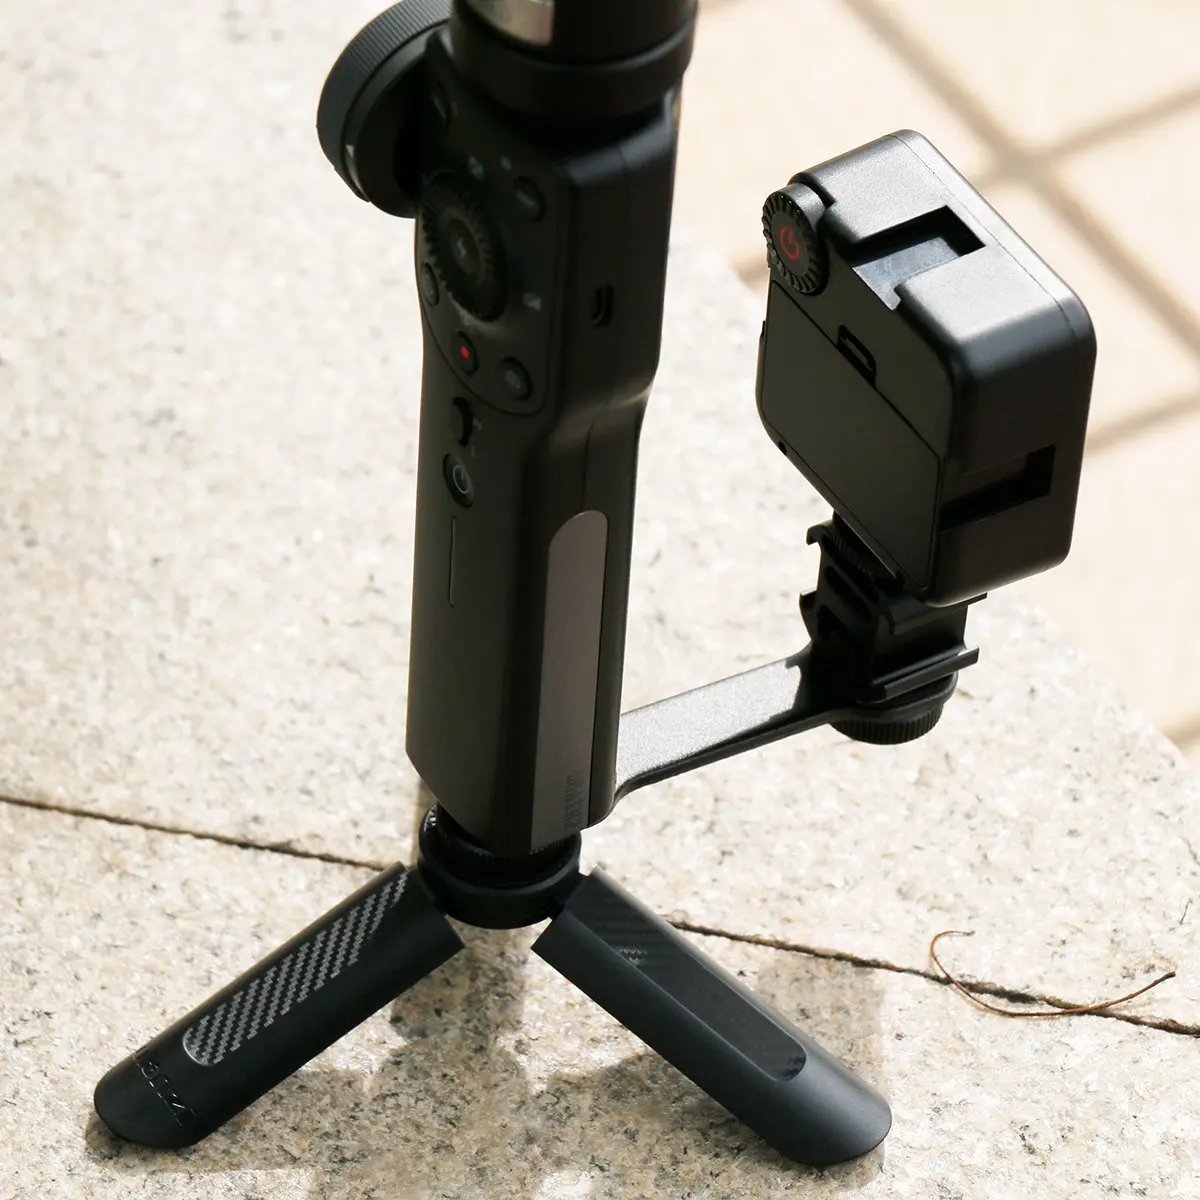 Тройной холодным башмаком Микрофон светодиодная лампа для видеосъемки светильник Набор для DJI OSMO Mobile 2 Zhiyun Smooth 4/Feiyu Vimble 2 шарнирный стабилизатор для камеры GoPro